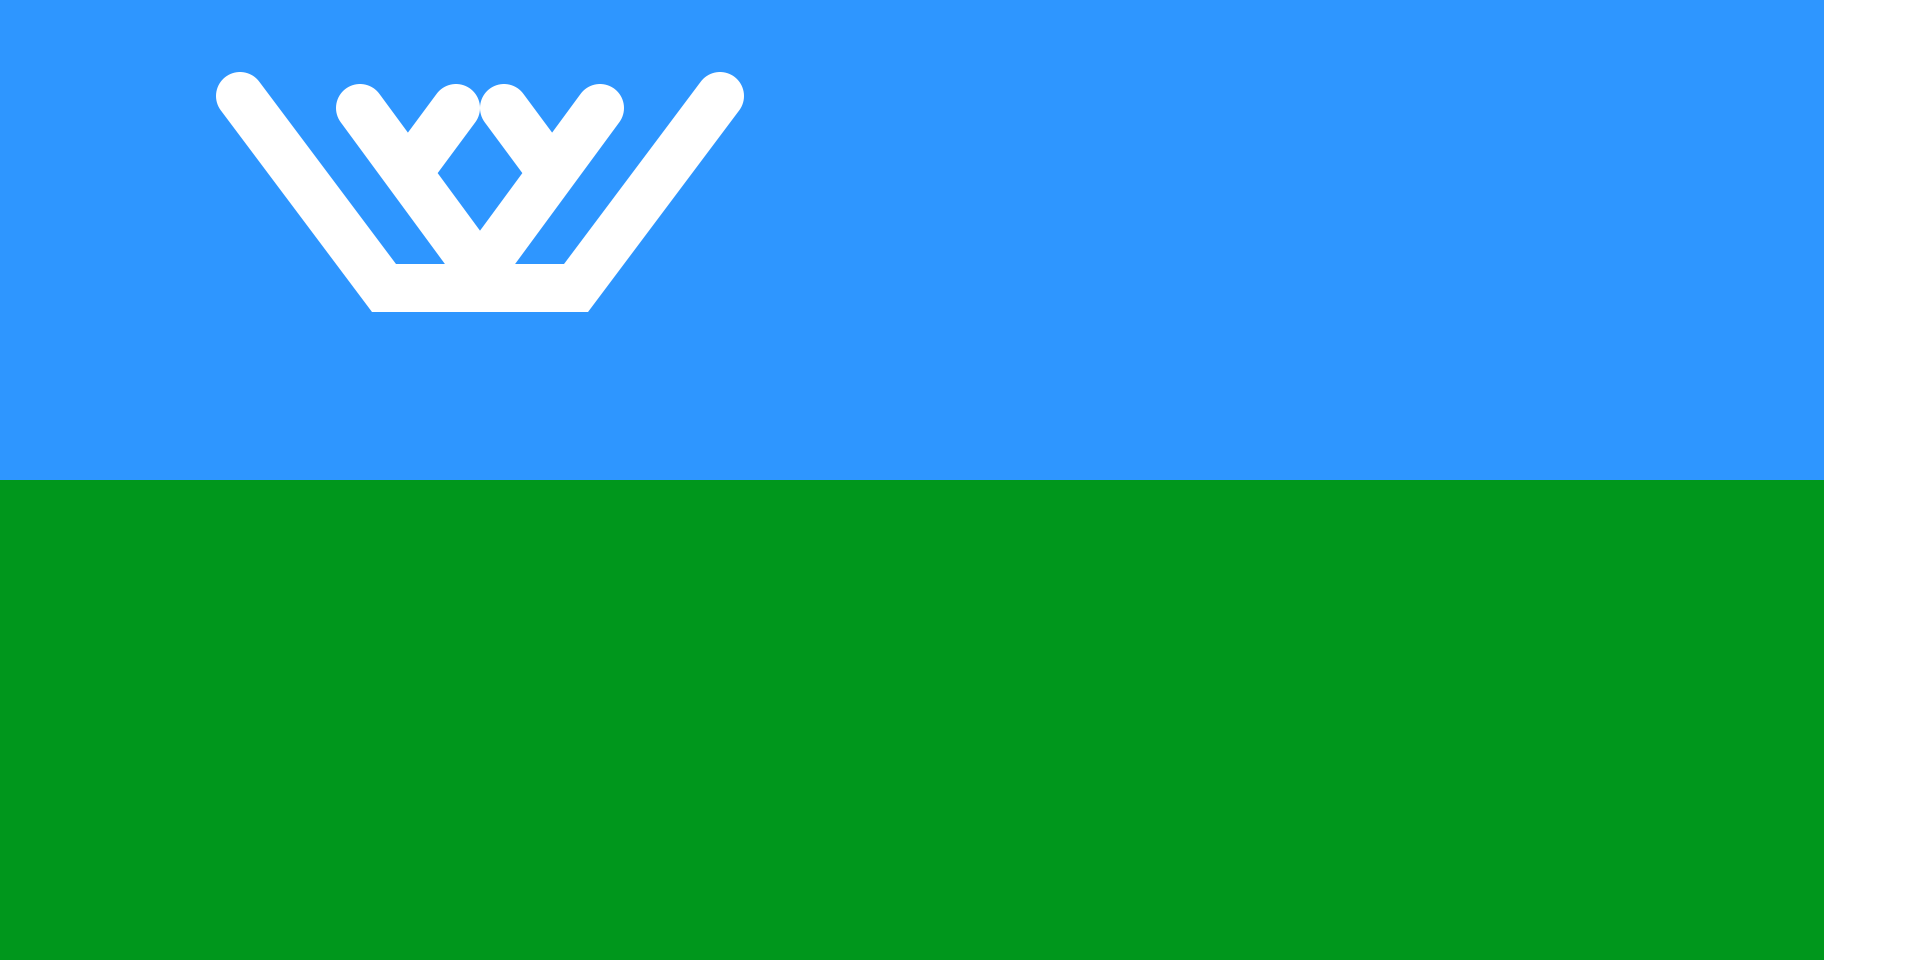 Флаг ХМАО-Югры